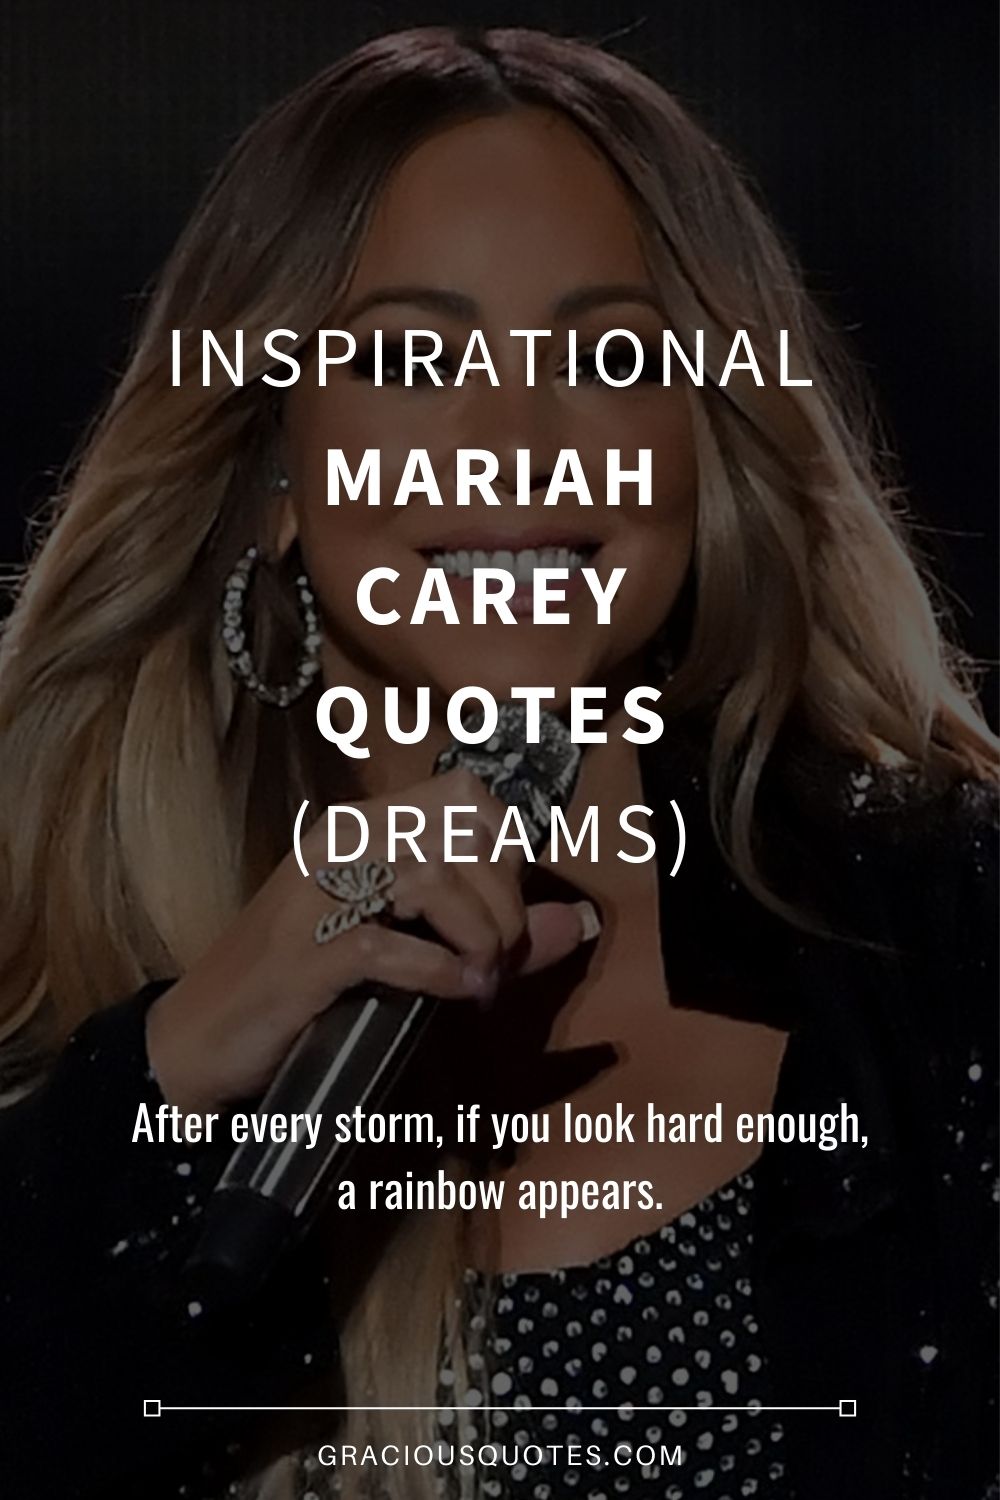 35 Inspirational Mariah Carey Quotes (DREAMS)